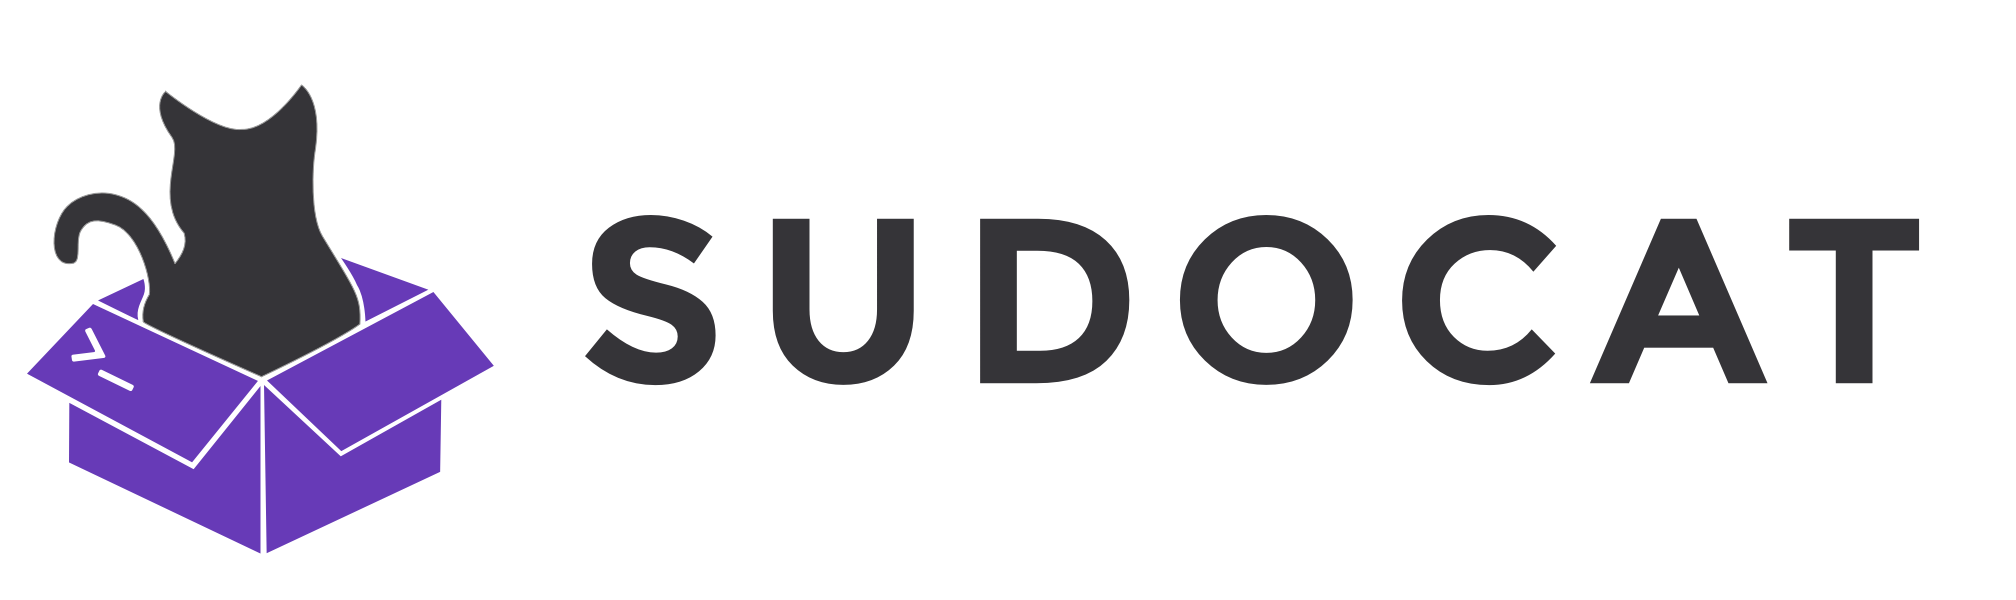 Sudocat logo